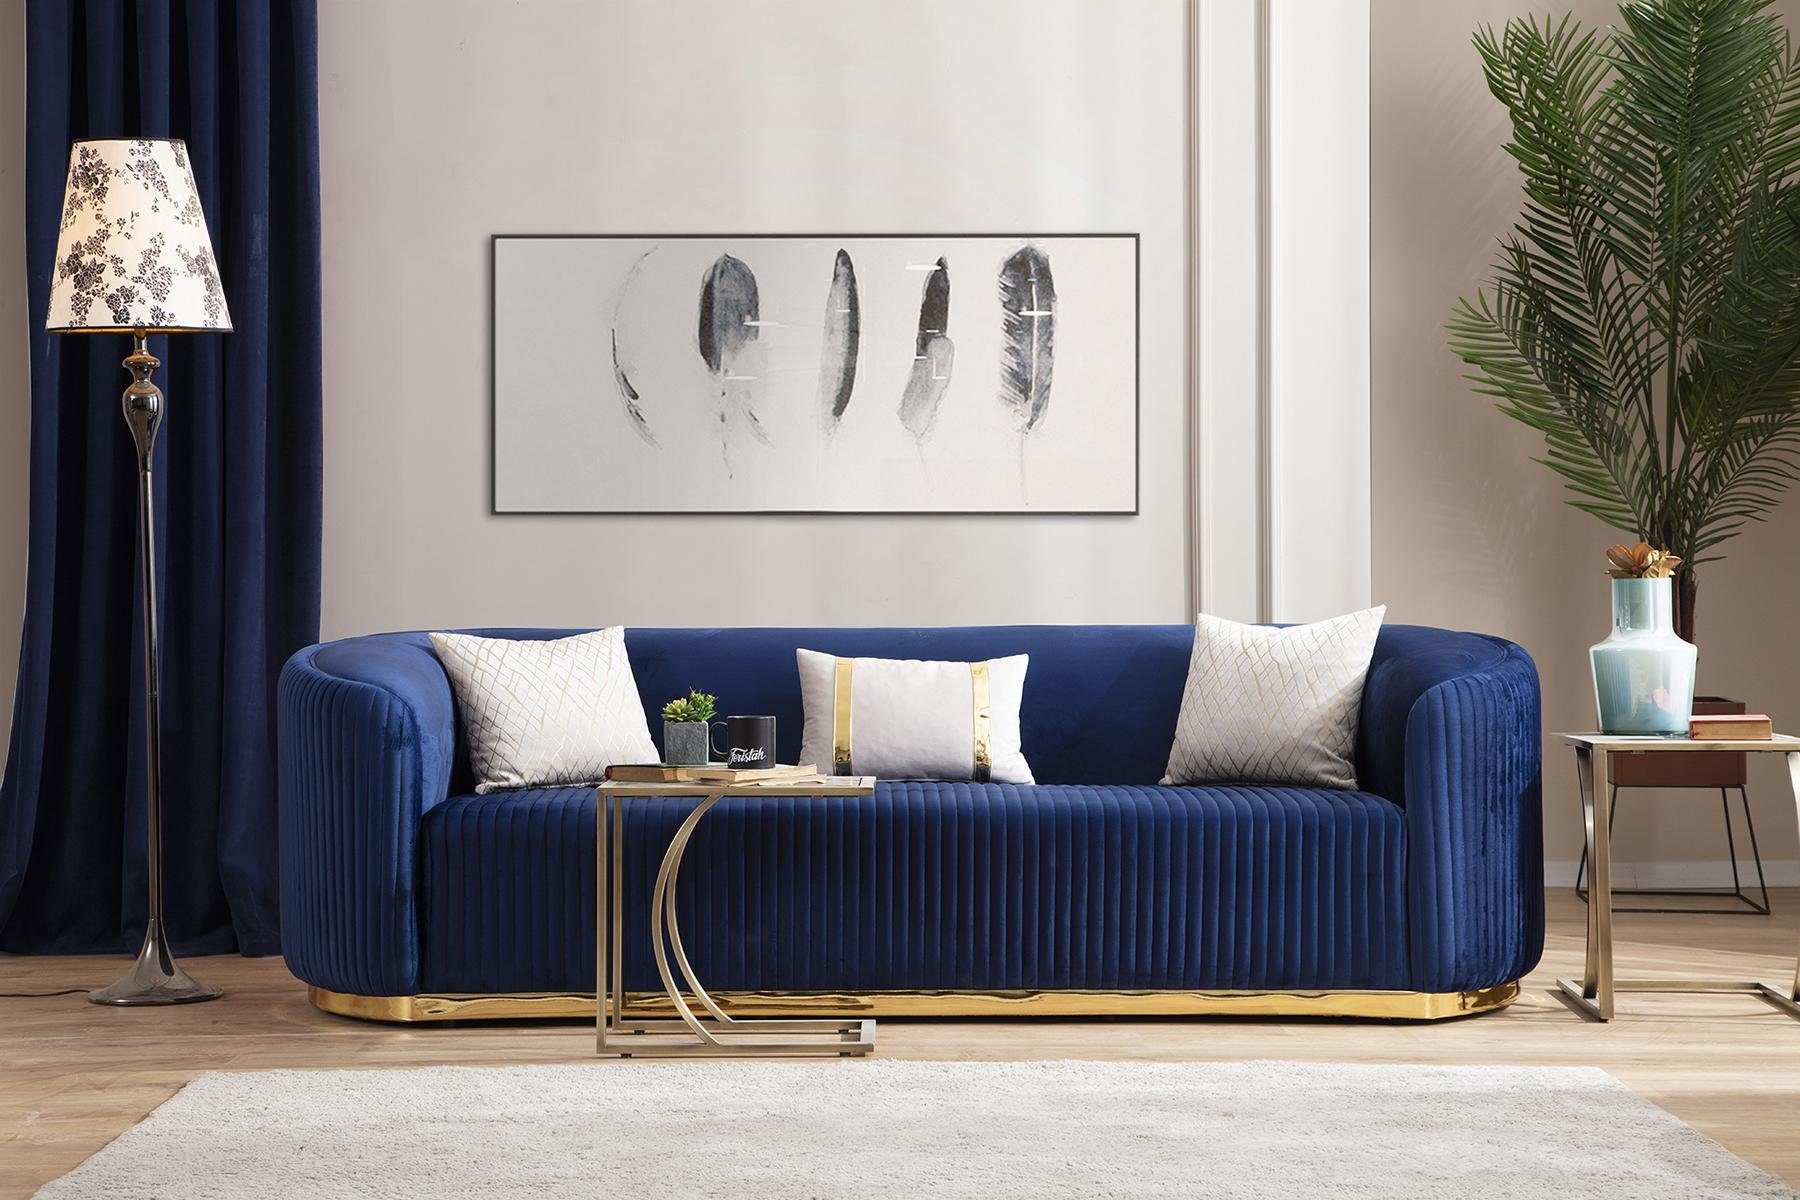 JVmoebel 3-Sitzer Edelstahl Dreisitzer Sofa Blau Wohnzimmermöbel  Polstersofas Couchen, 1 Teile, Made in Europa